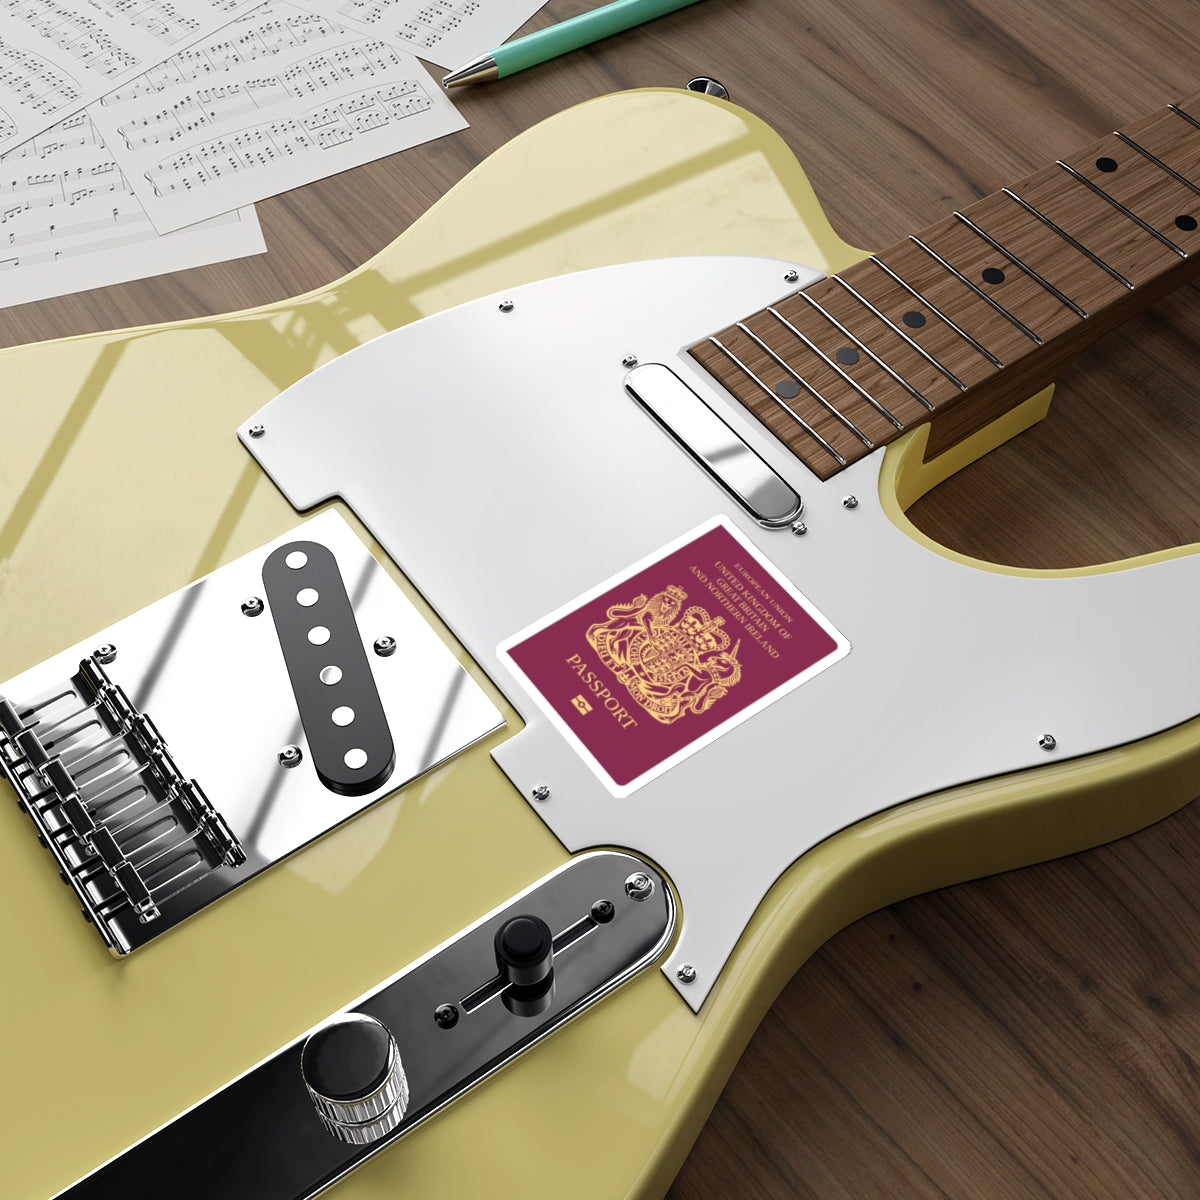 British Passport STICKER Vinyl Die-Cut Decal-The Sticker Space